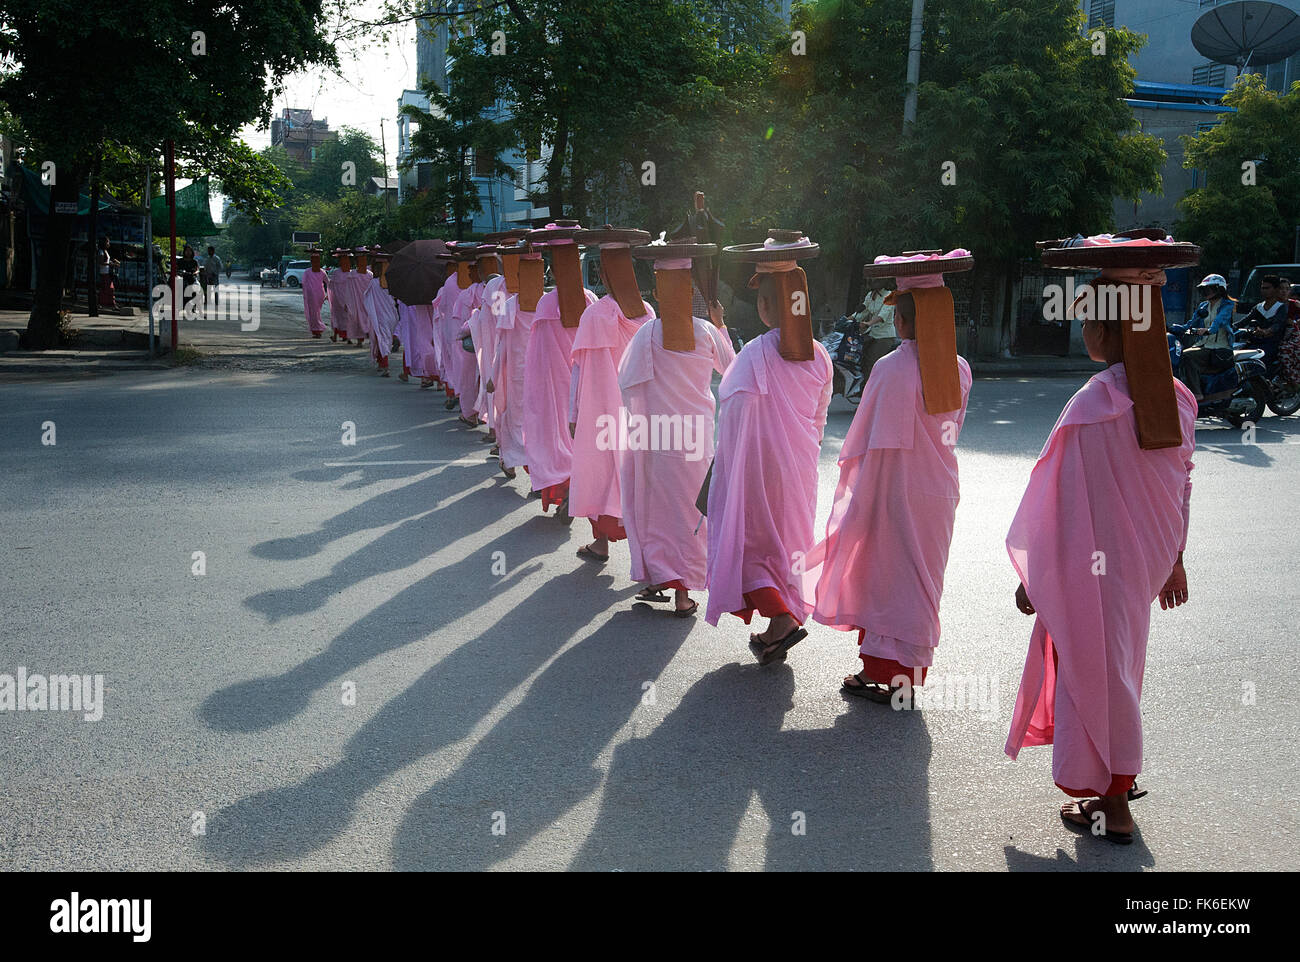 Suora in tunica rosa immagini e fotografie stock ad alta risoluzione - Alamy